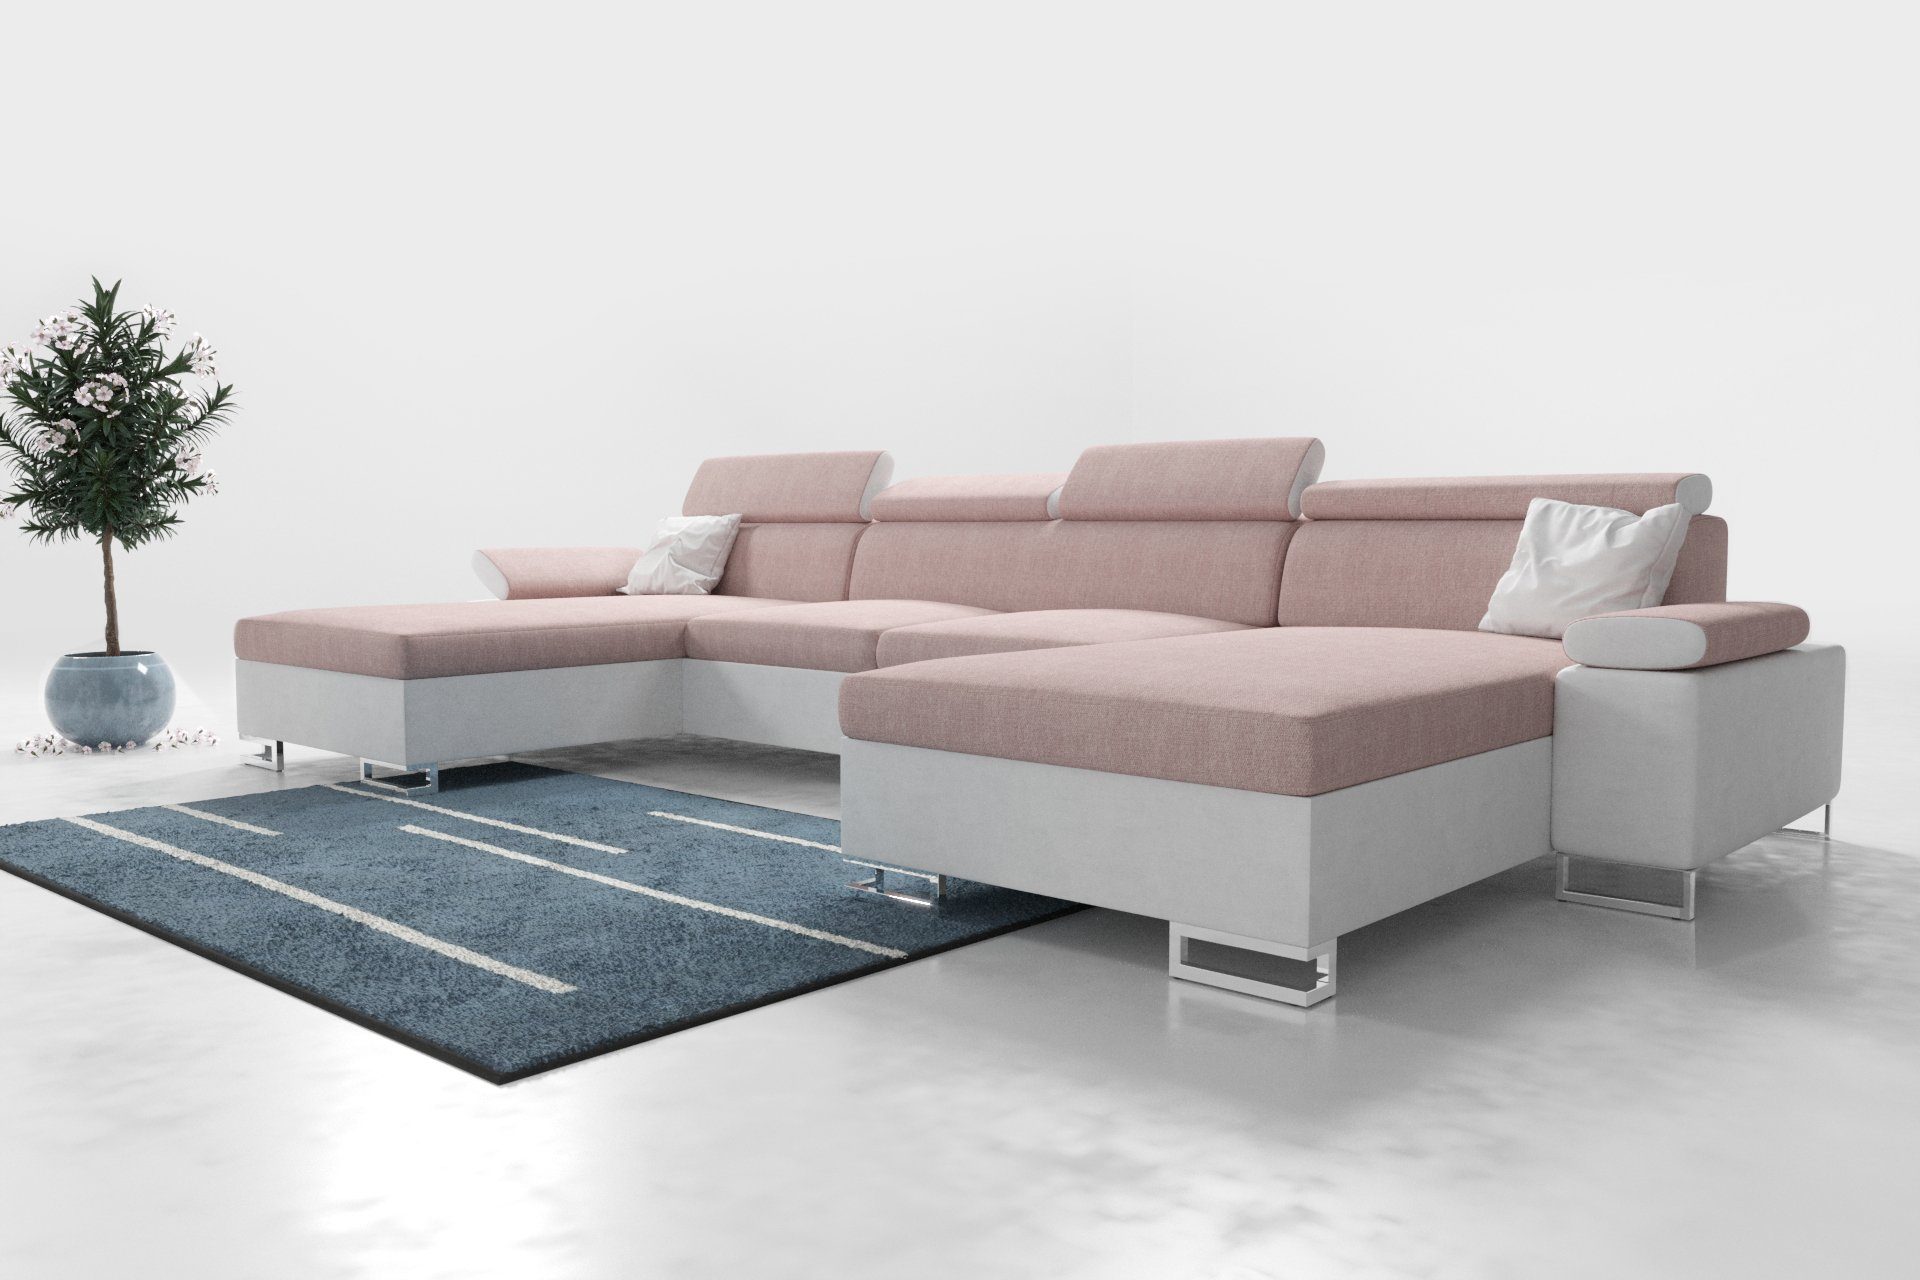 ROYAL24_MARKT Polstergarnitur Moderne Eleganz: Polsterecke Ecksofa 260 CU1, (Premium Couchgarnitur, mit Schlaffunktion und Stauraum), - Integrierter Stauraum - Schlaffunktion - Hochwertige Materialien Rosa - Grau